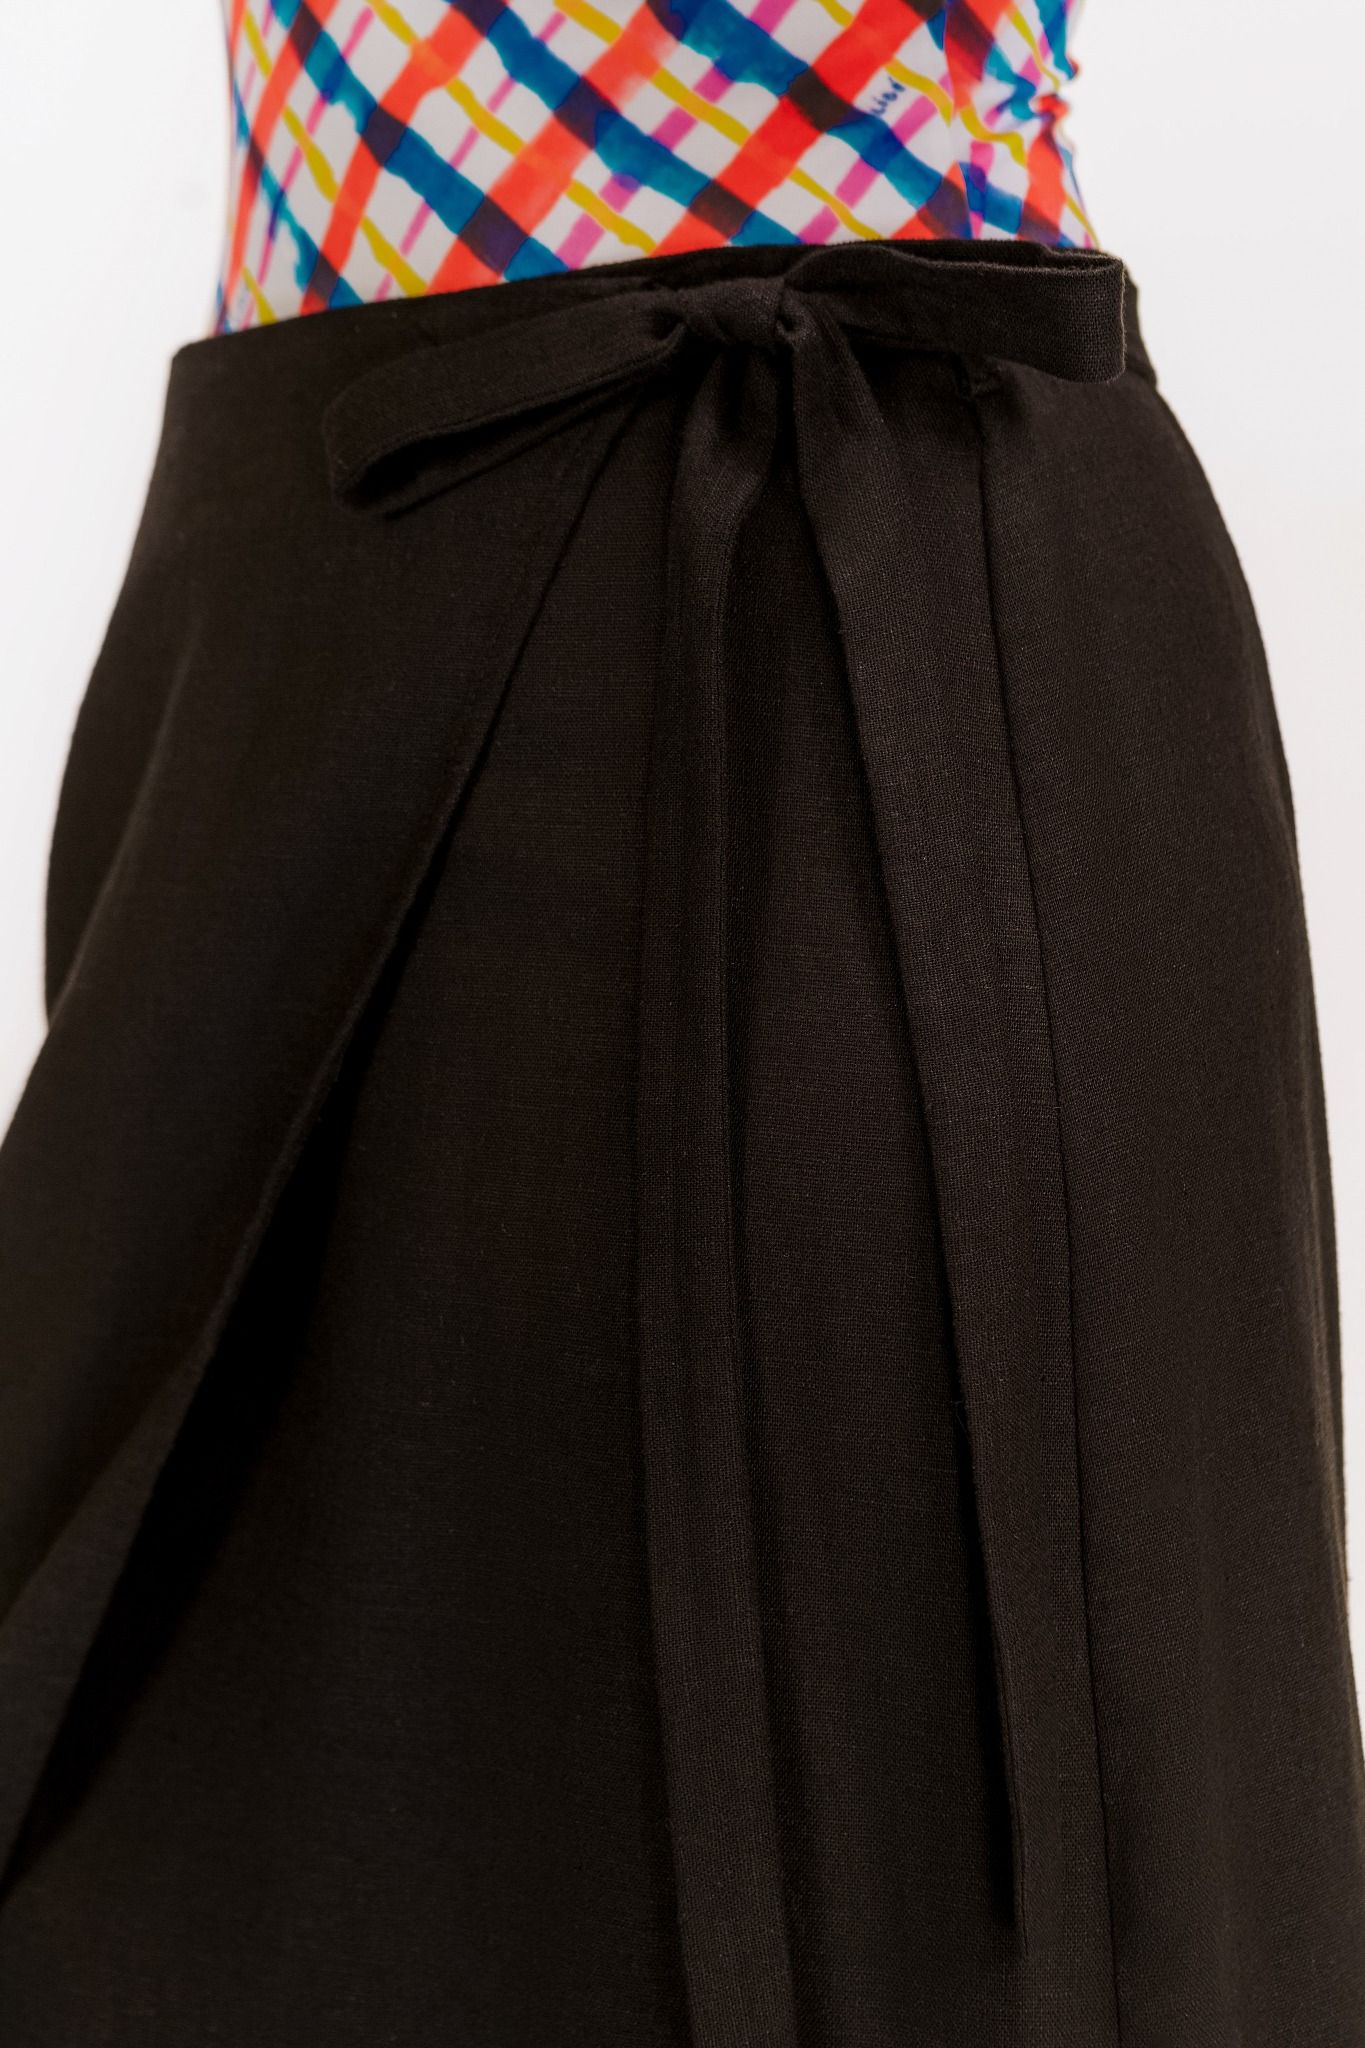  Black Beach Linen Cover Up Skirt 